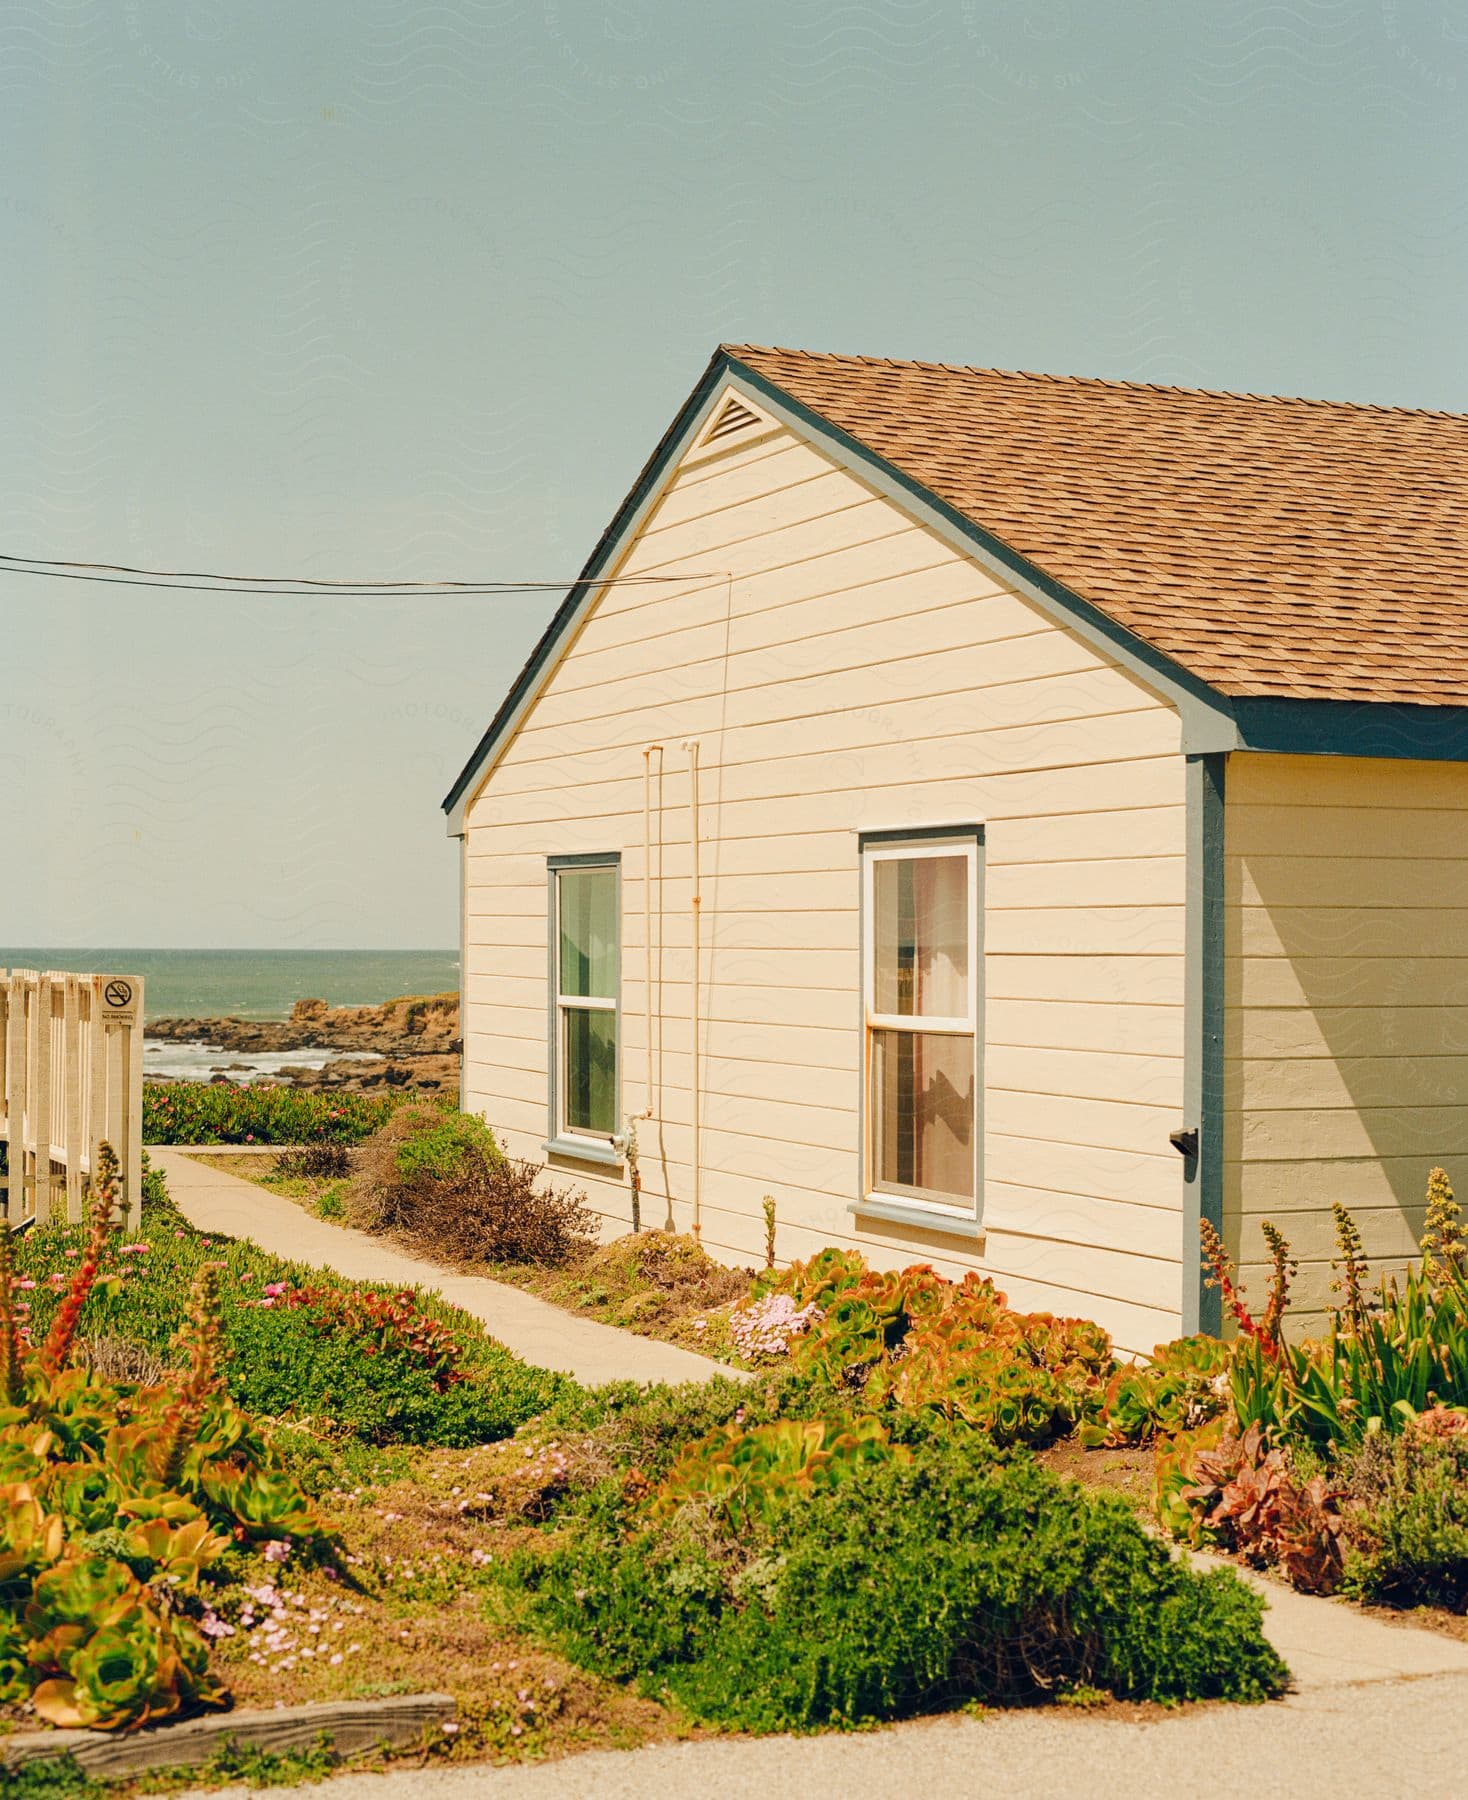 A coastal house with a small garden